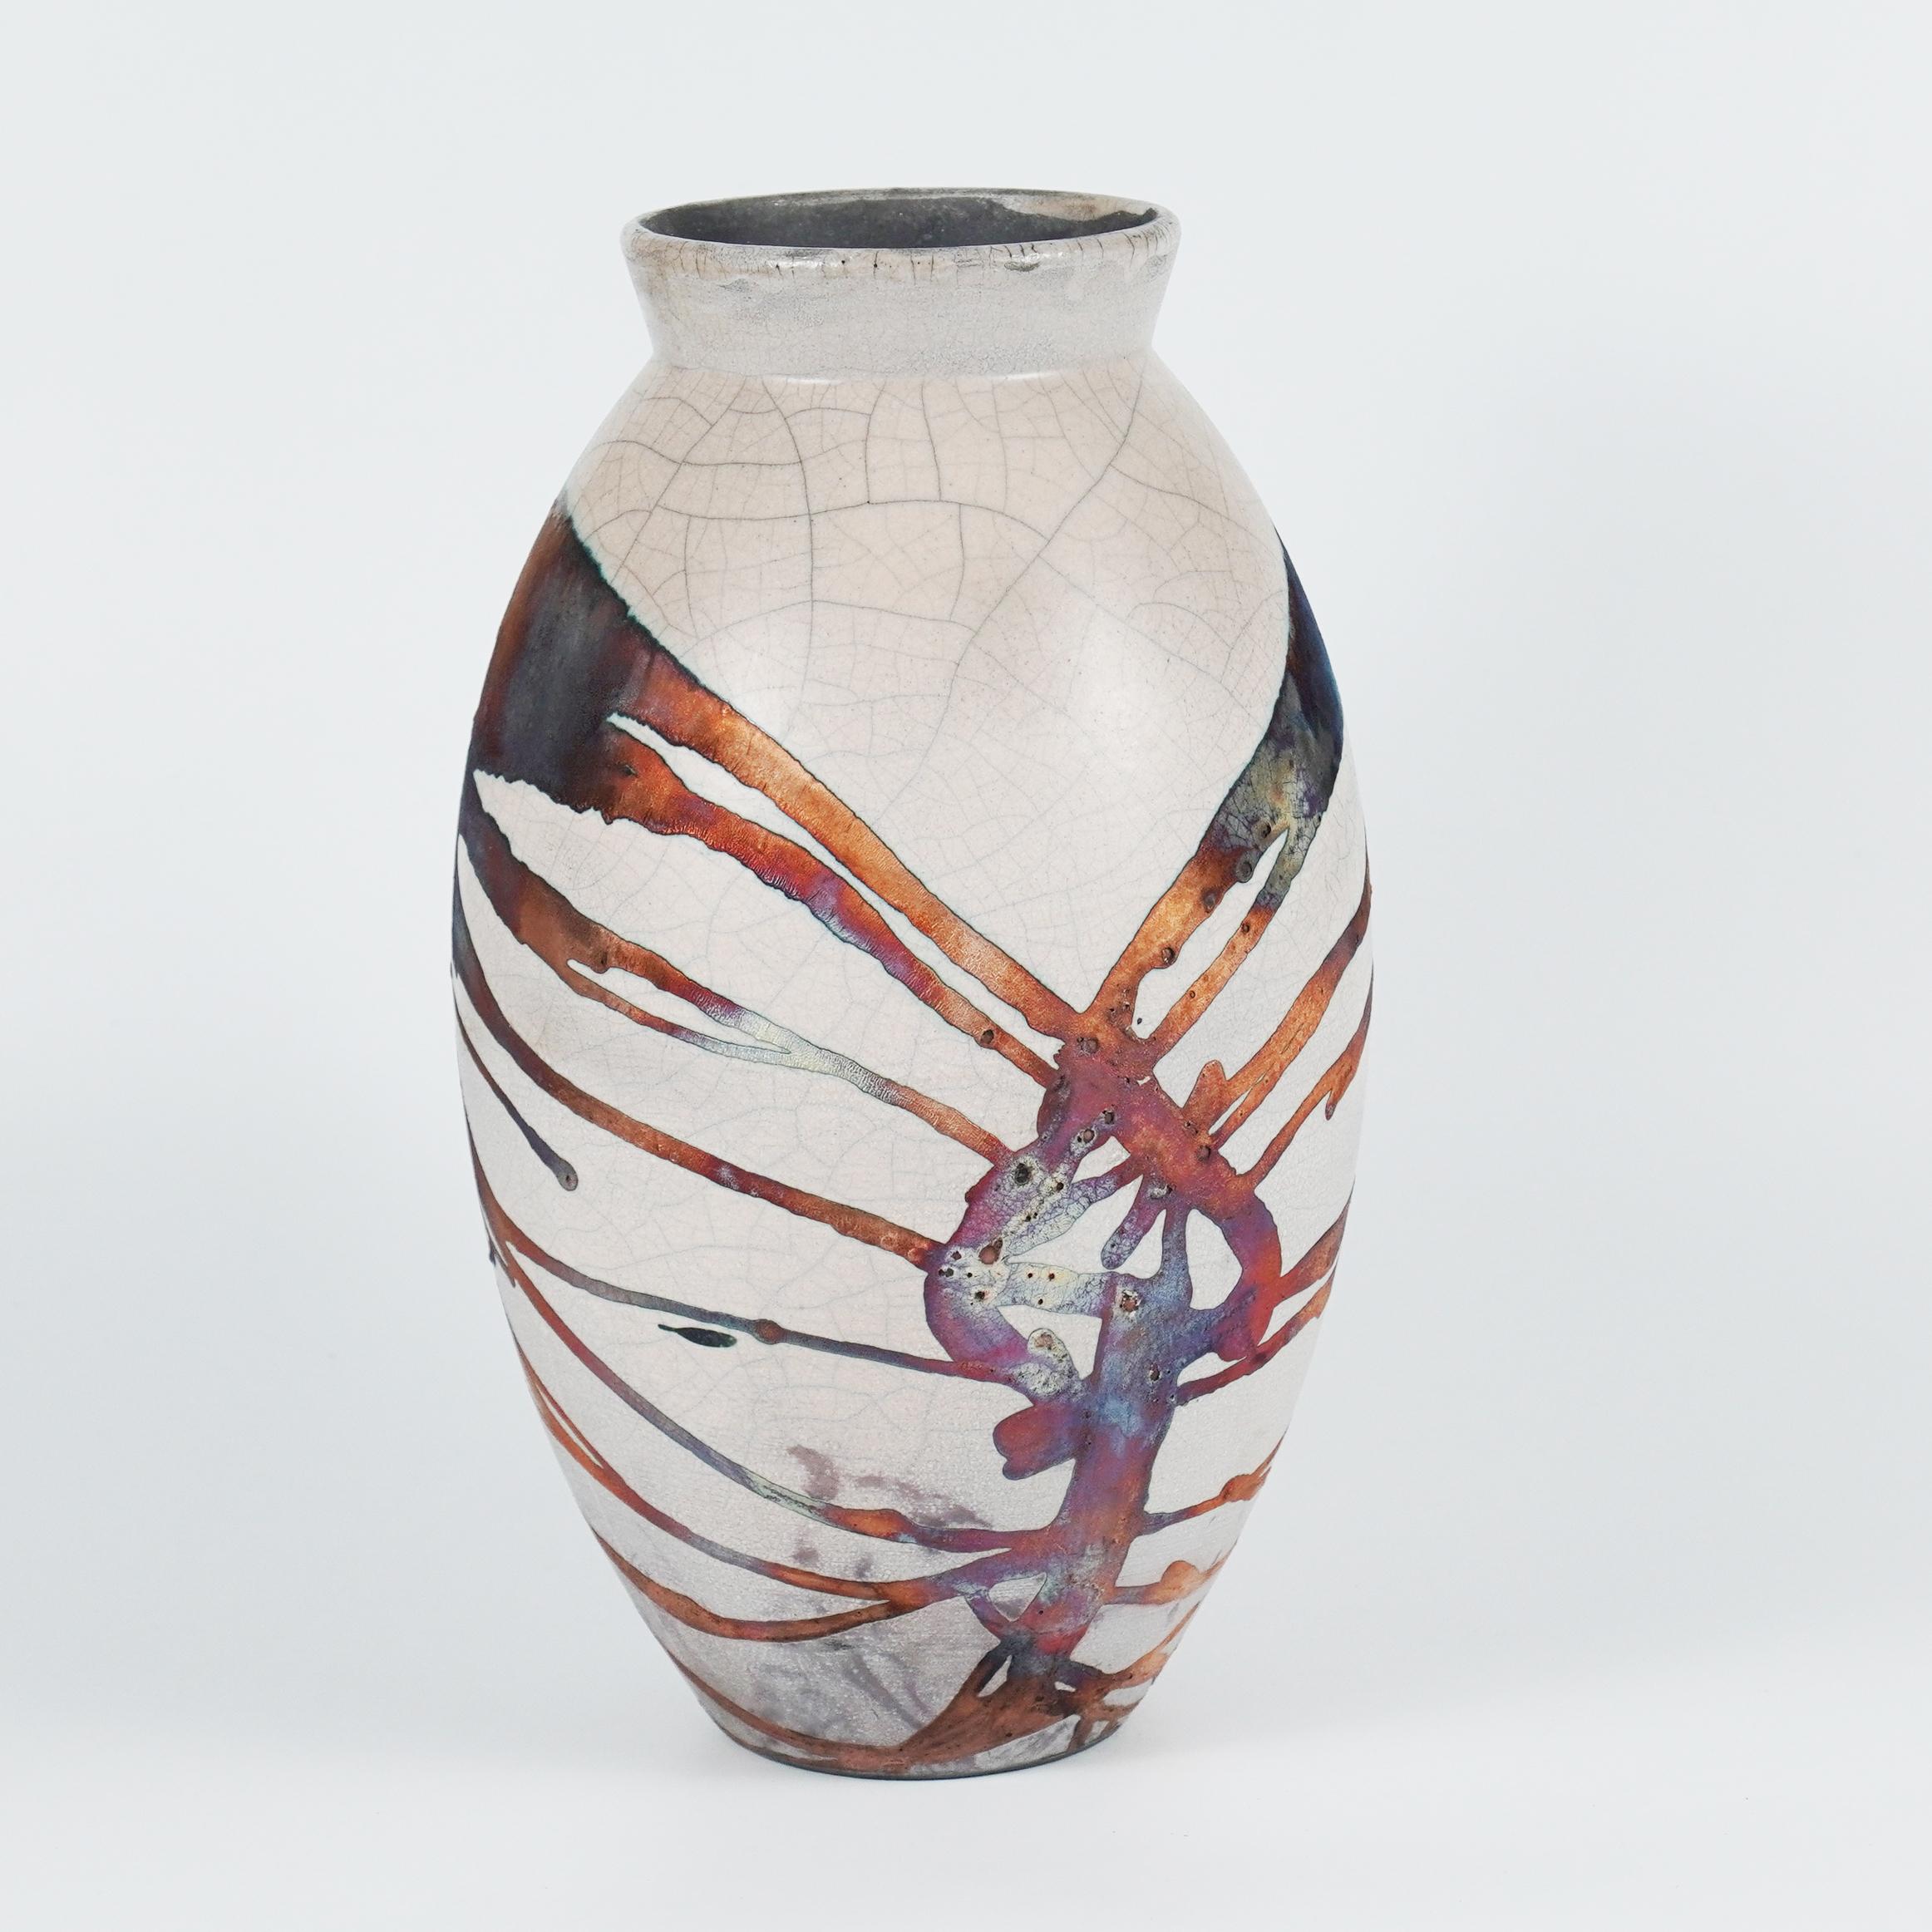 Ein faszinierender Anblick, sobald die regenbogenartigen Patinas ins Auge fallen. Die ovale Vase ist ein hohes, tropfenförmiges Design, das einen Hauch von Eleganz und Faszination in einen Innenraum bringt. Mit der Raku-Technik hergestellt, wird sie